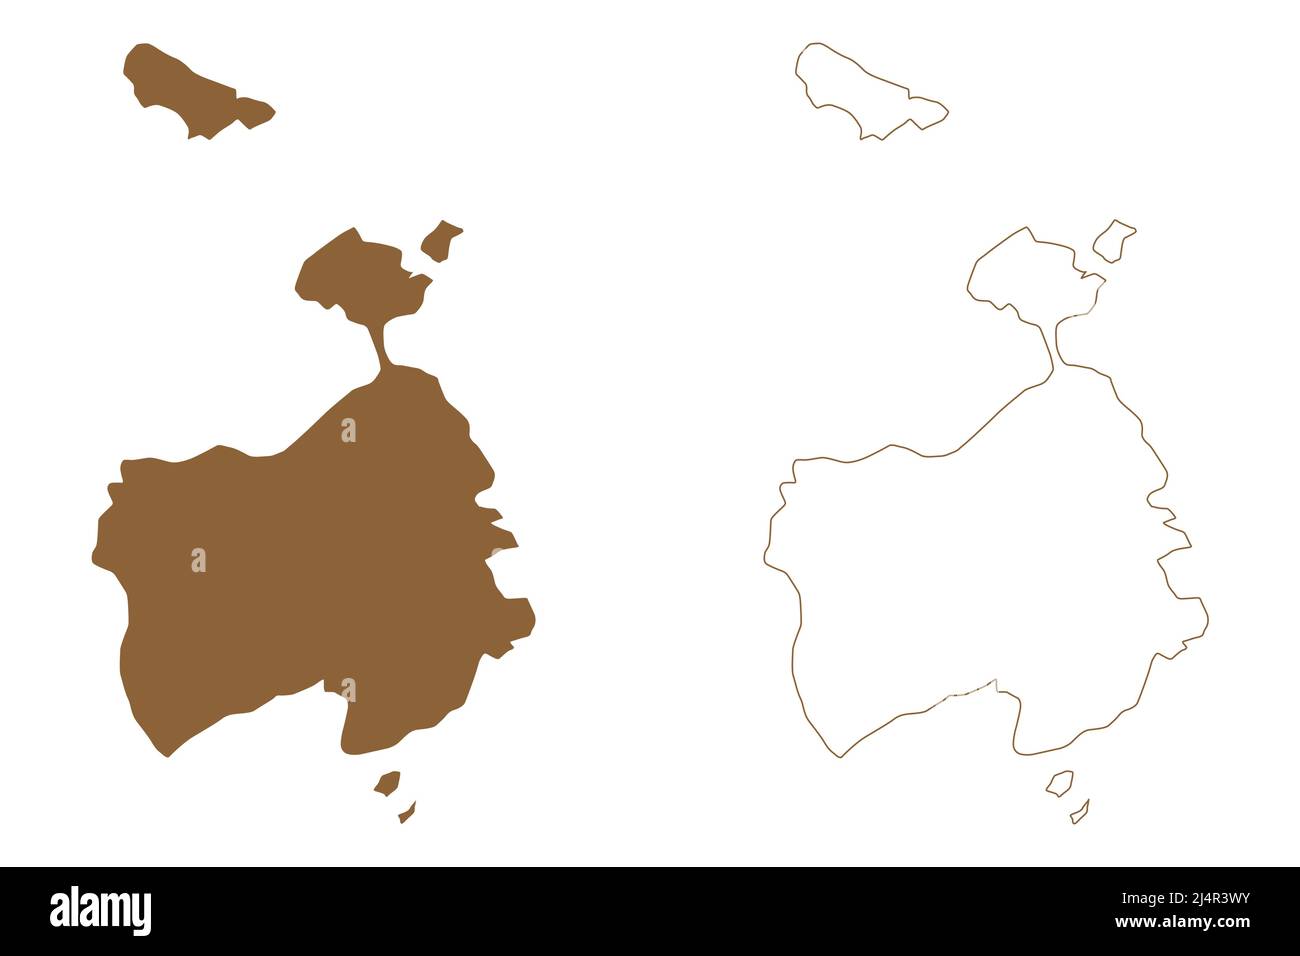 Île Nightingale (Royaume-Uni de Grande-Bretagne et d'Irlande du Nord, partie constituante de Sainte-Hélène, Ascension et Tristan da Cunha) vecteur de carte Illustration de Vecteur